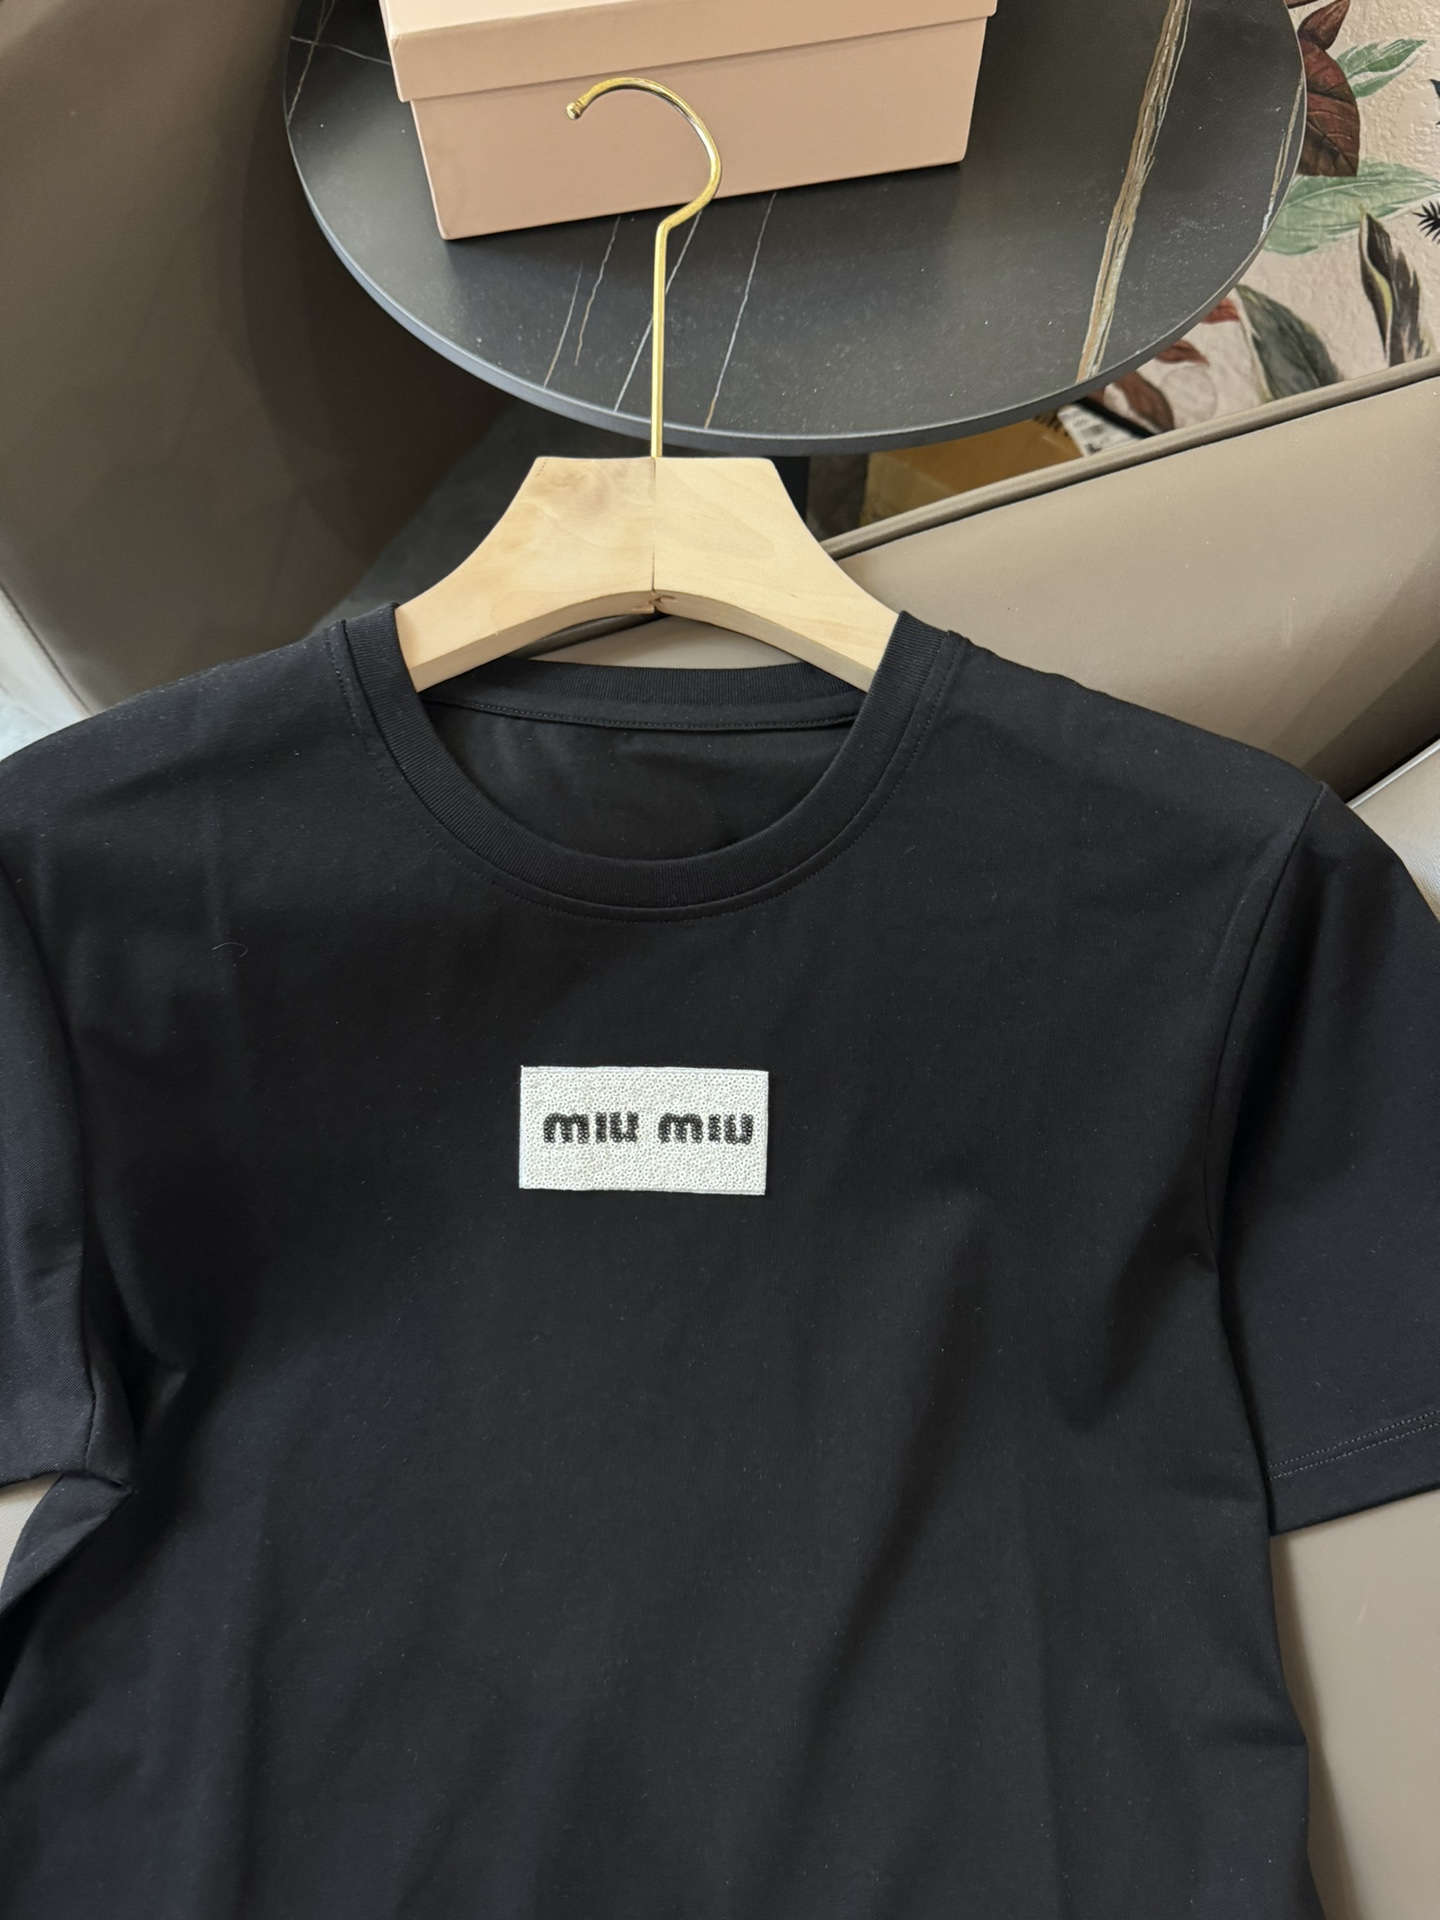 DG012#新款T恤miumiu手工订珠片修身款短袖T恤黑色白色SML